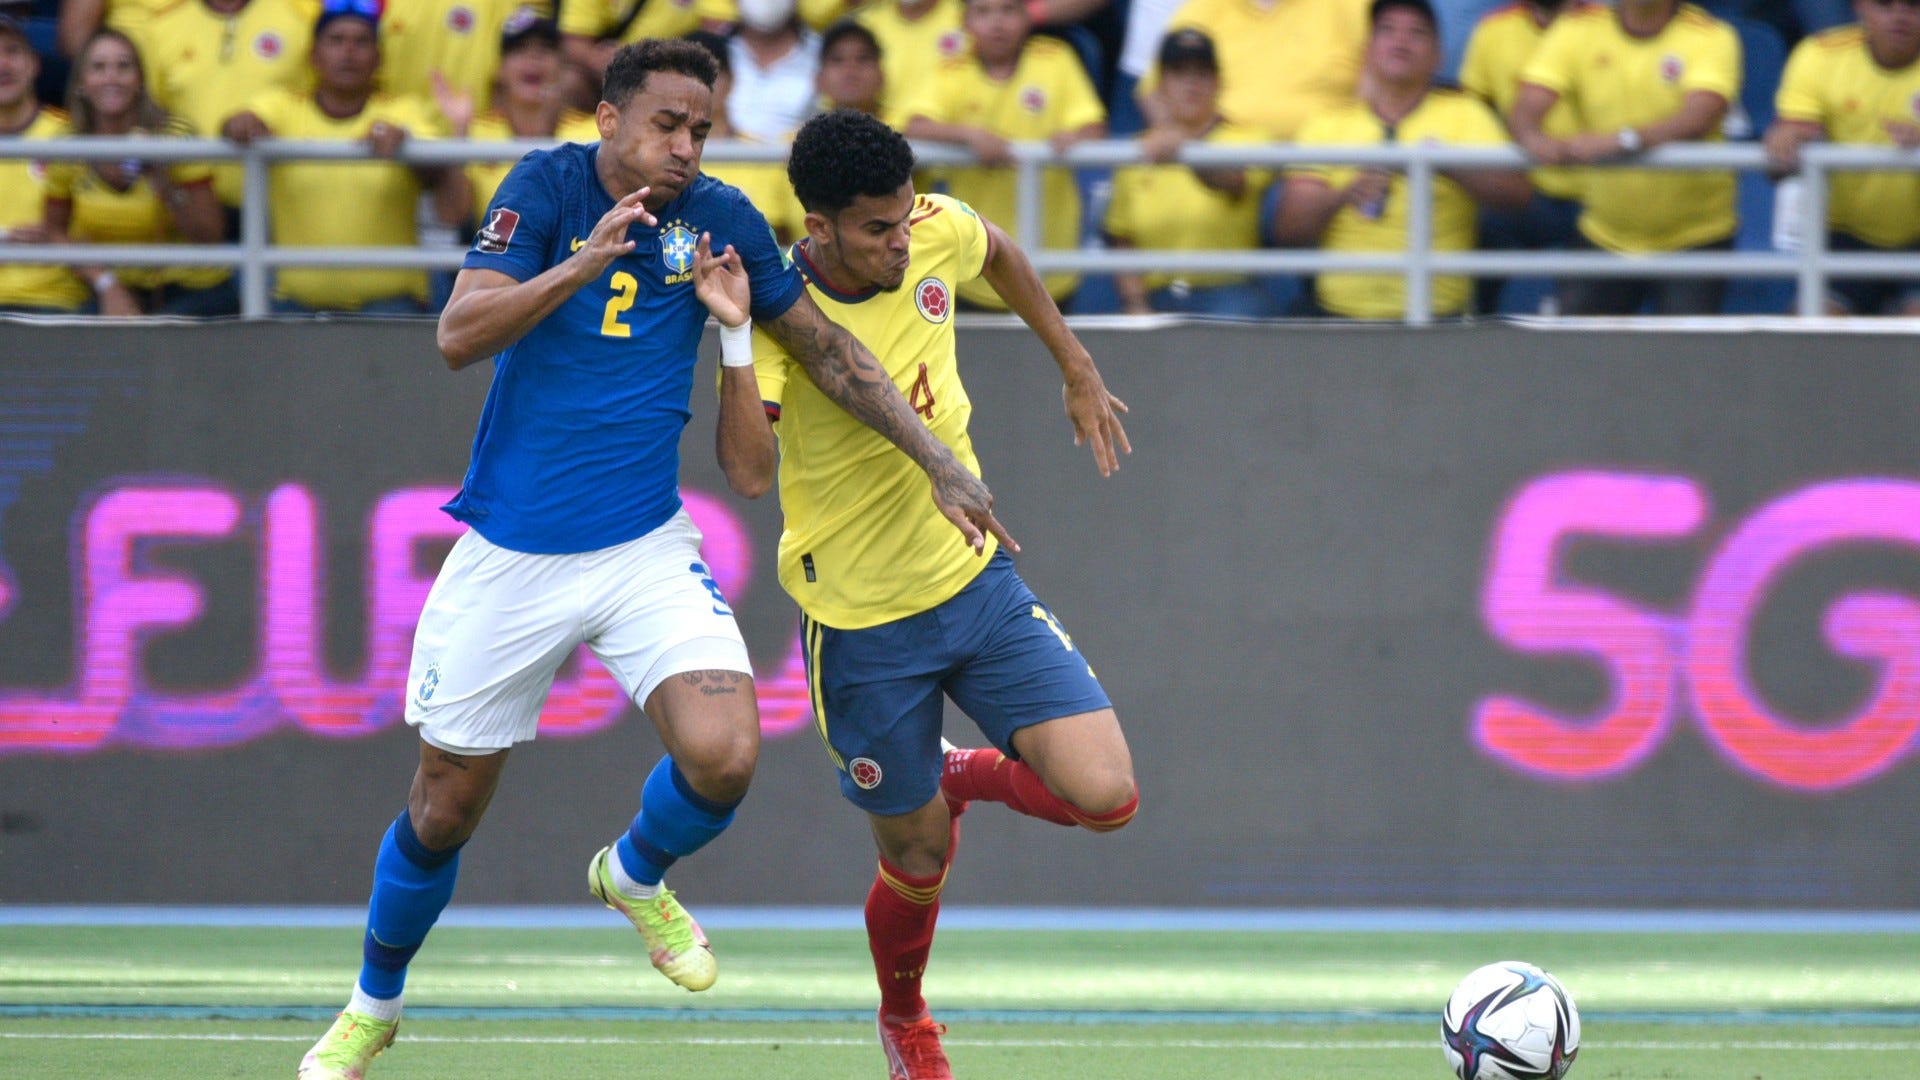 Luis Diaz Danilo Colombia vs Brazil World Cup qualifier 2021